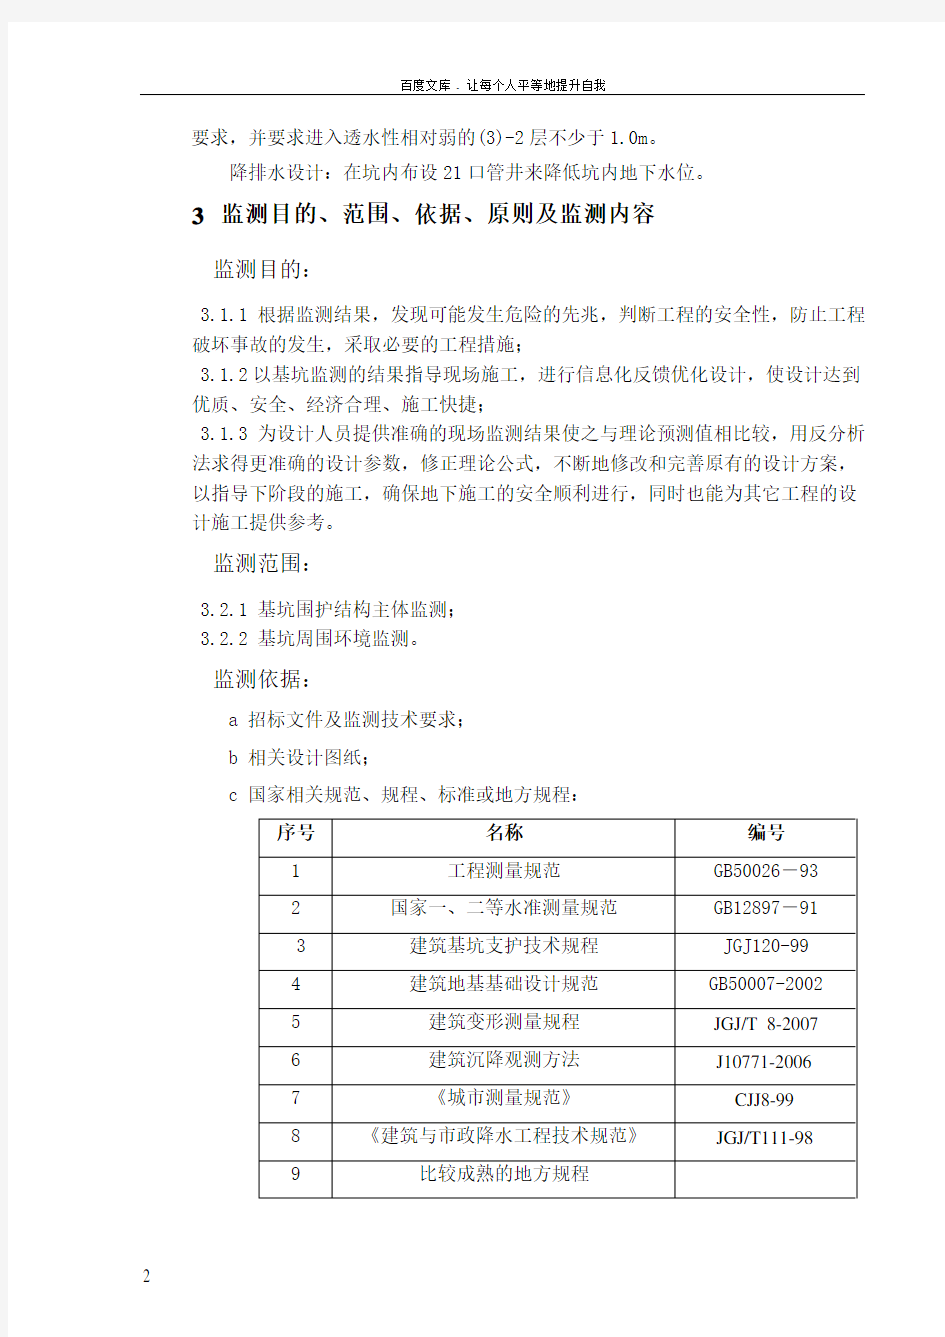 南京工业大学人才公寓基坑围护监测方案